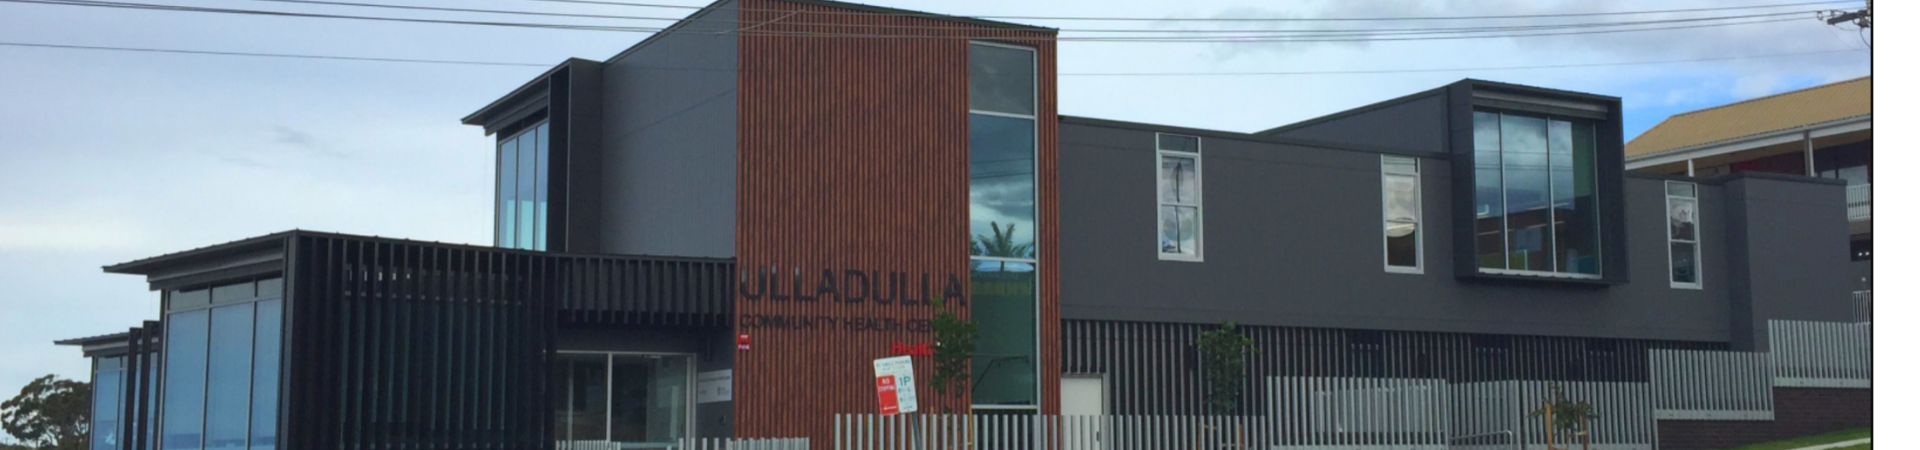 HealthOne Ulladulla building facade